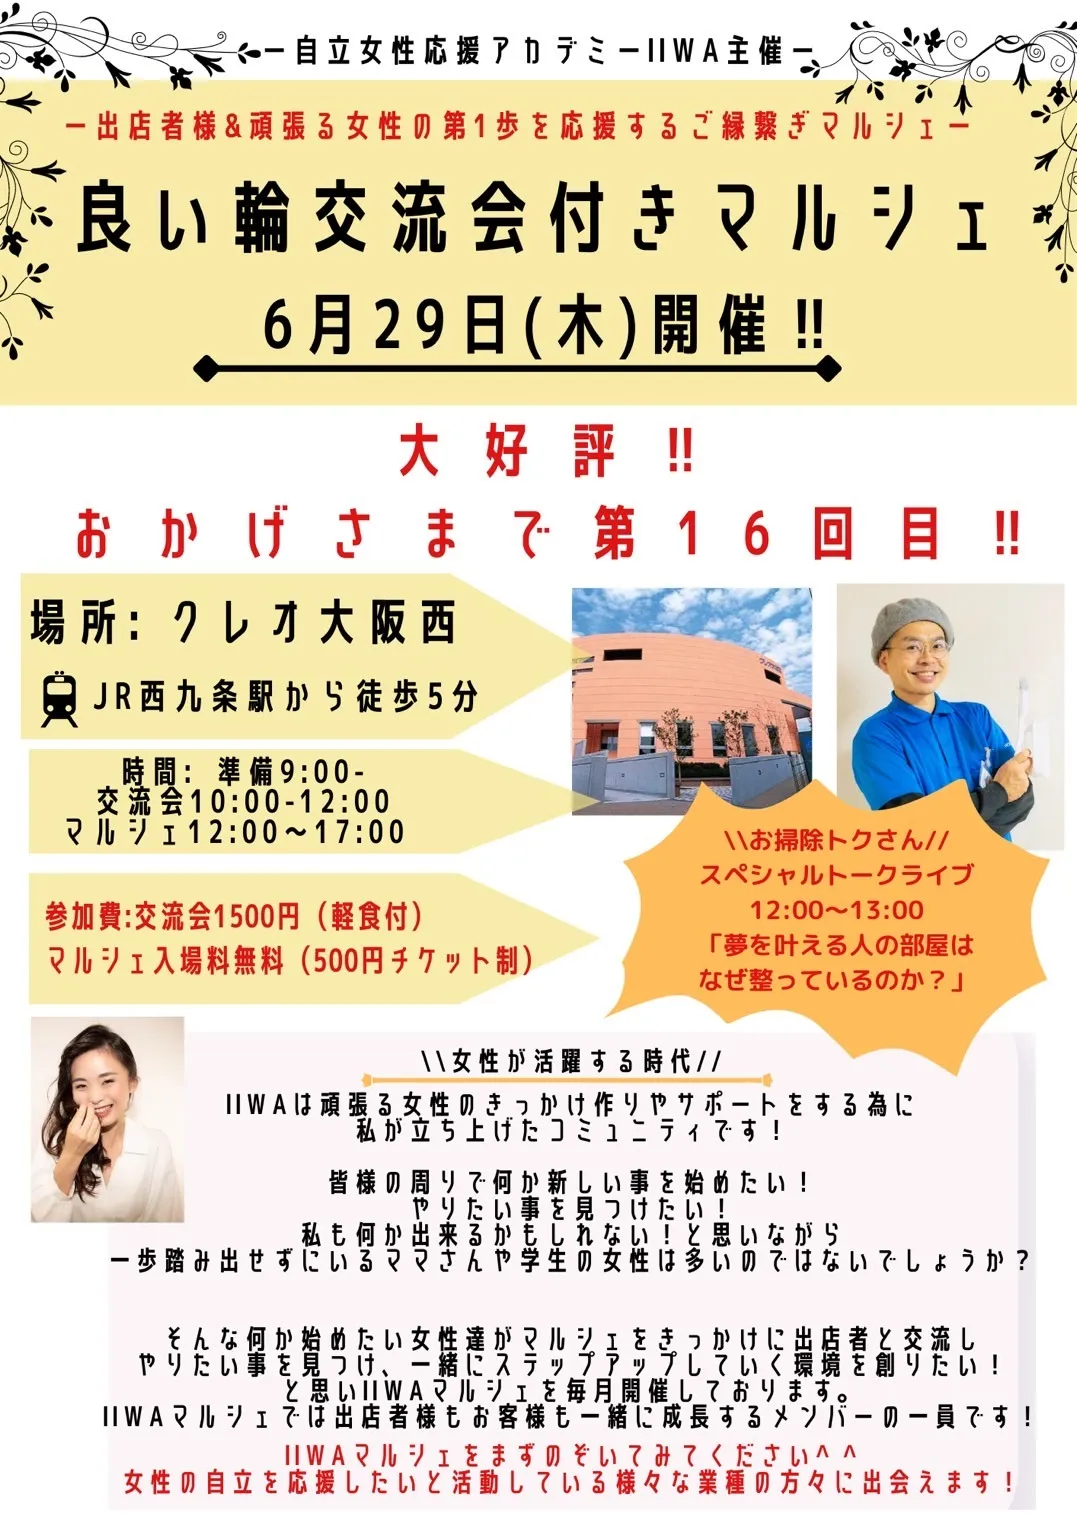 6/29(木）IIWAのマルシェ開催のお知らせです♥クレオ大阪西にて